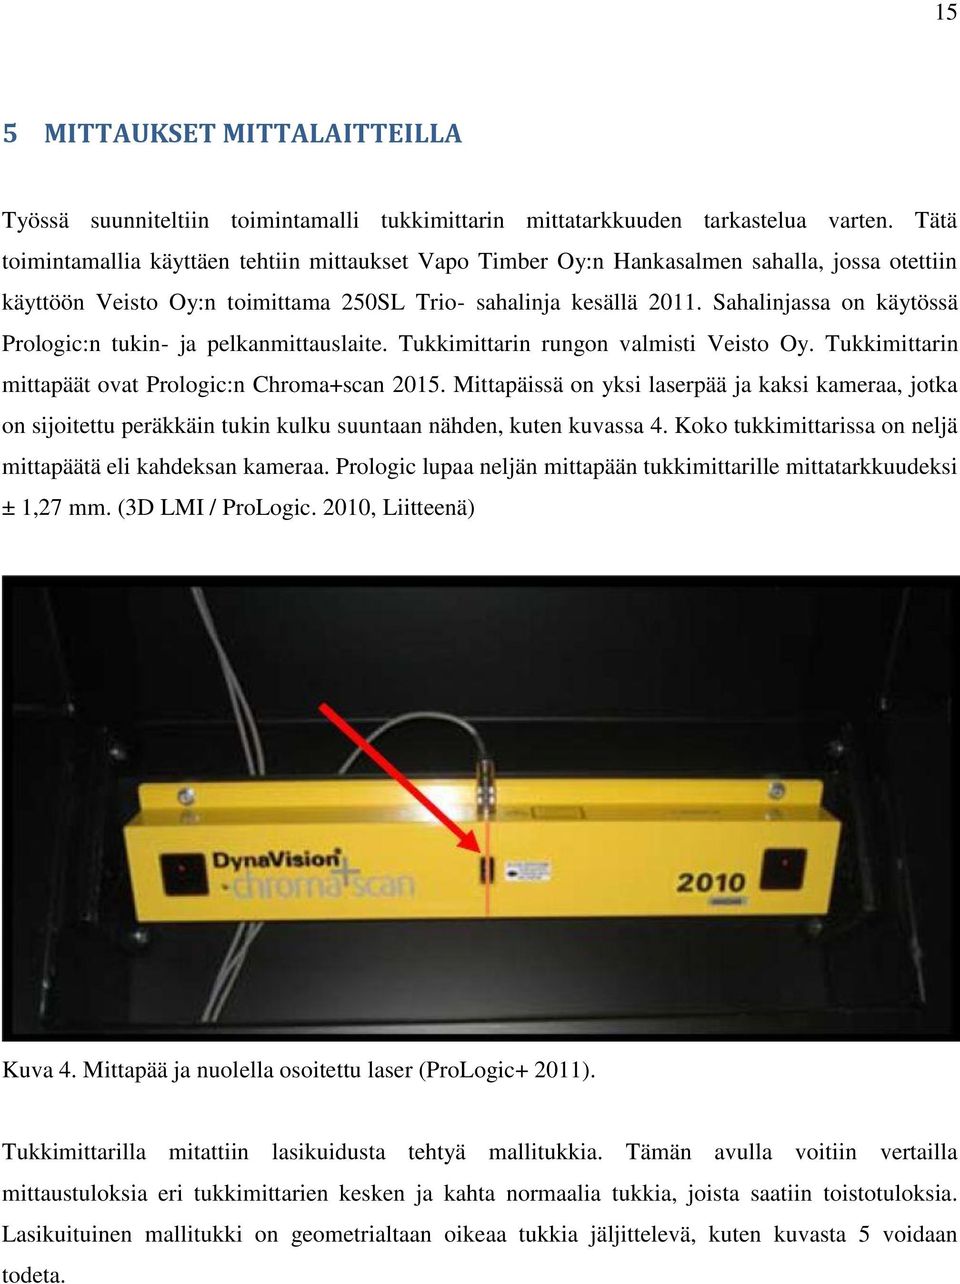 Sahalinjassa on käytössä Prologic:n tukin- ja pelkanmittauslaite. Tukkimittarin rungon valmisti Veisto Oy. Tukkimittarin mittapäät ovat Prologic:n Chroma+scan 2015.